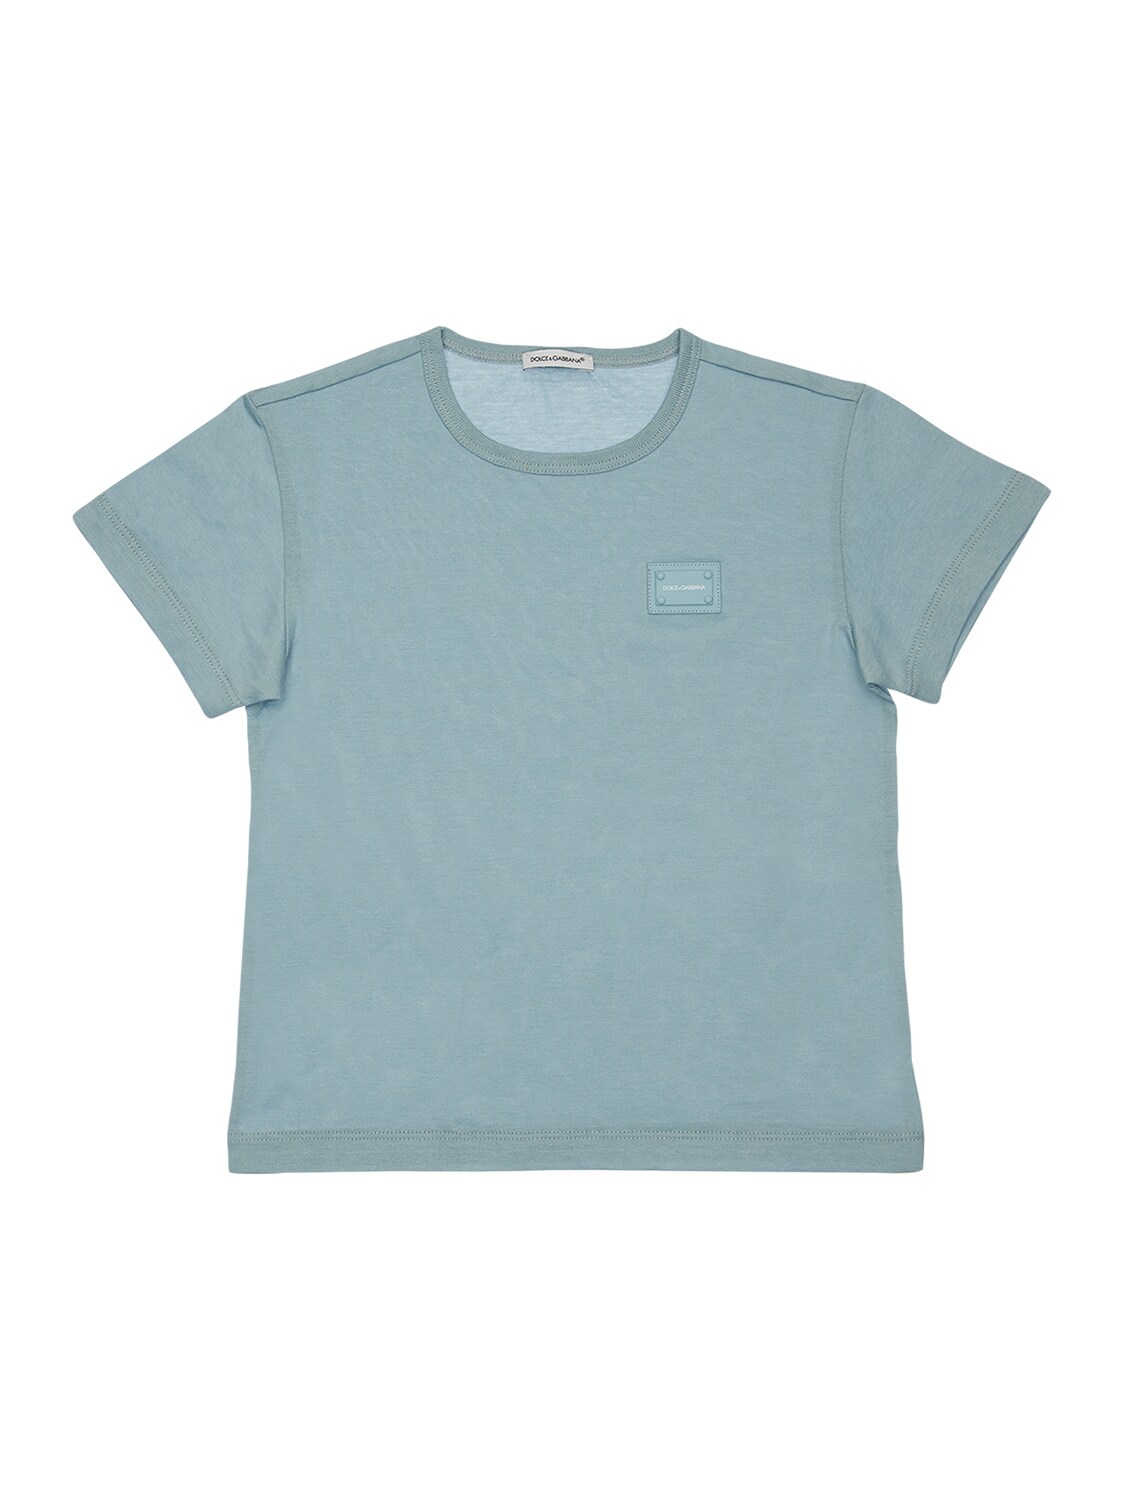 Dolce & Gabbana Kids' Logo Cotton Jersey T-shirt In Light Blue